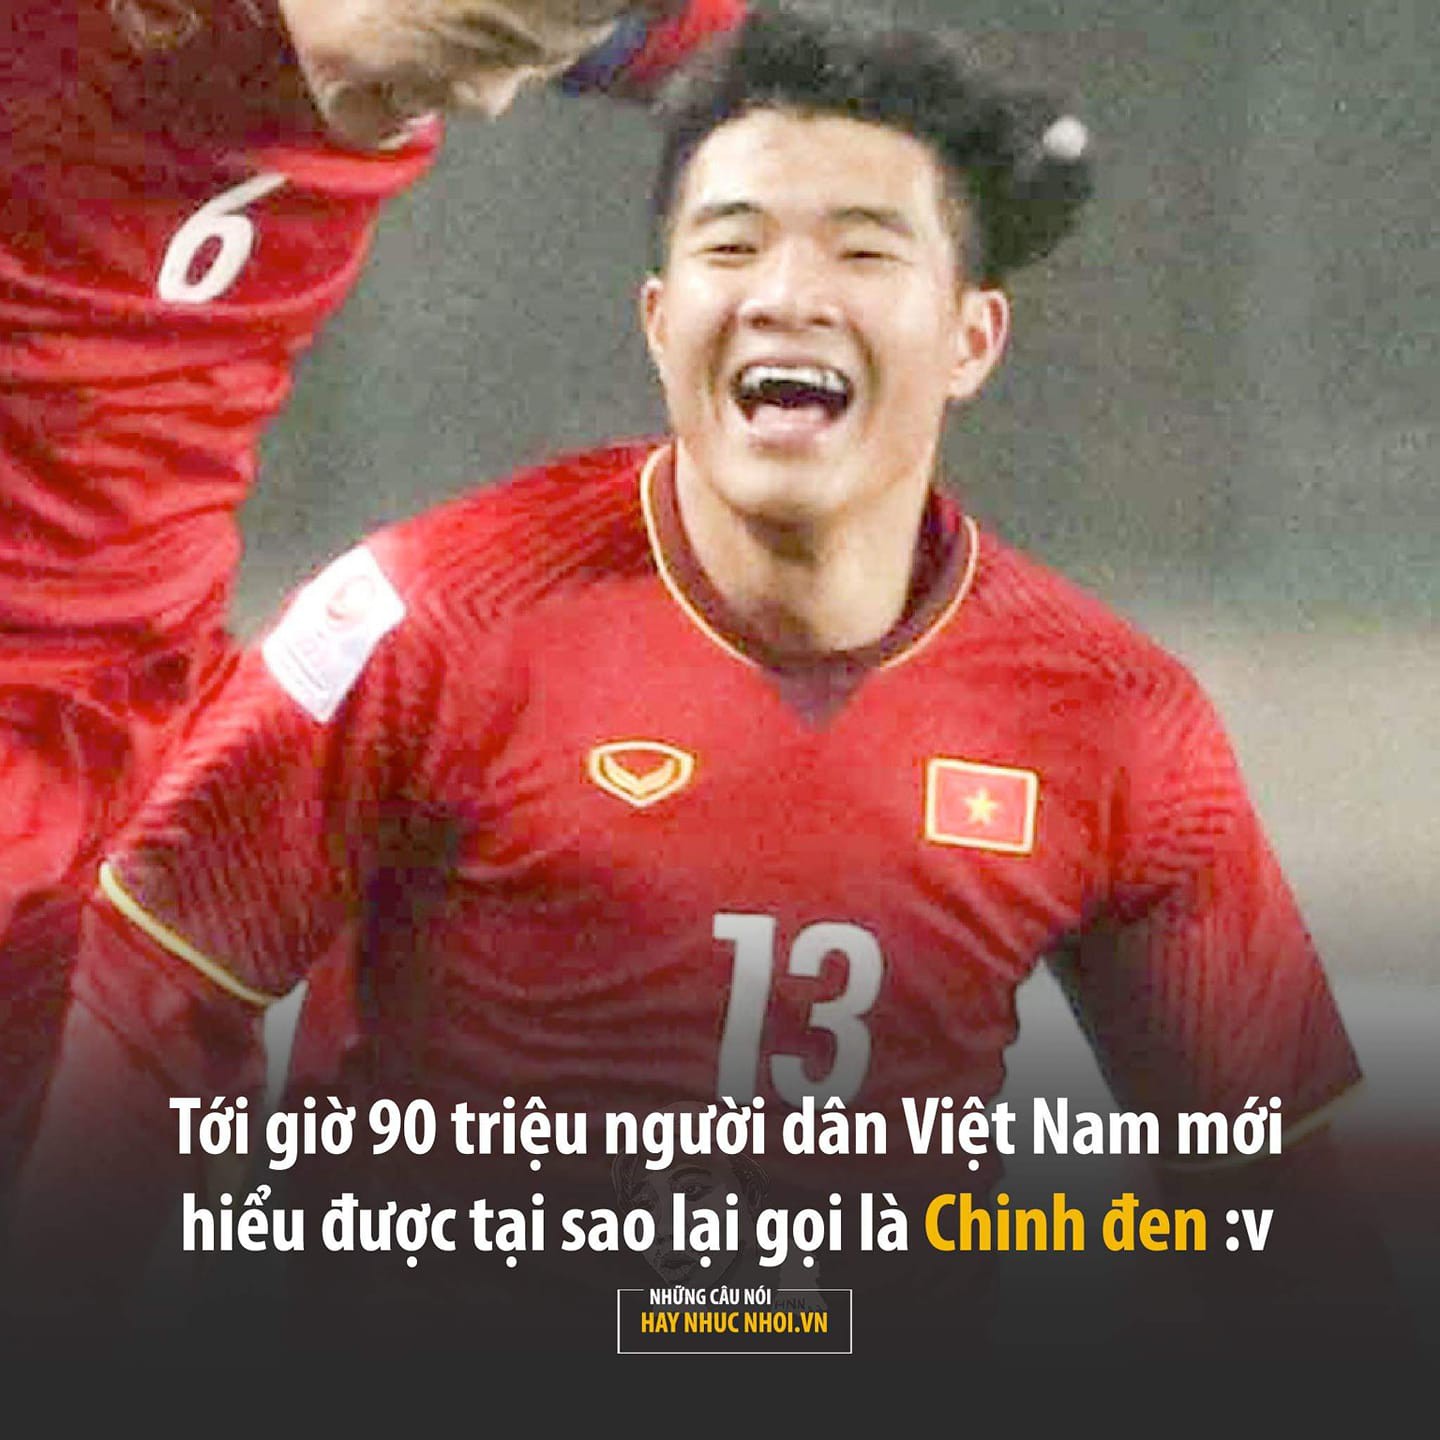 NHM Việt Nam tiếc nuối: Nếu Chinh không gỗ thì...! - Ảnh 2.